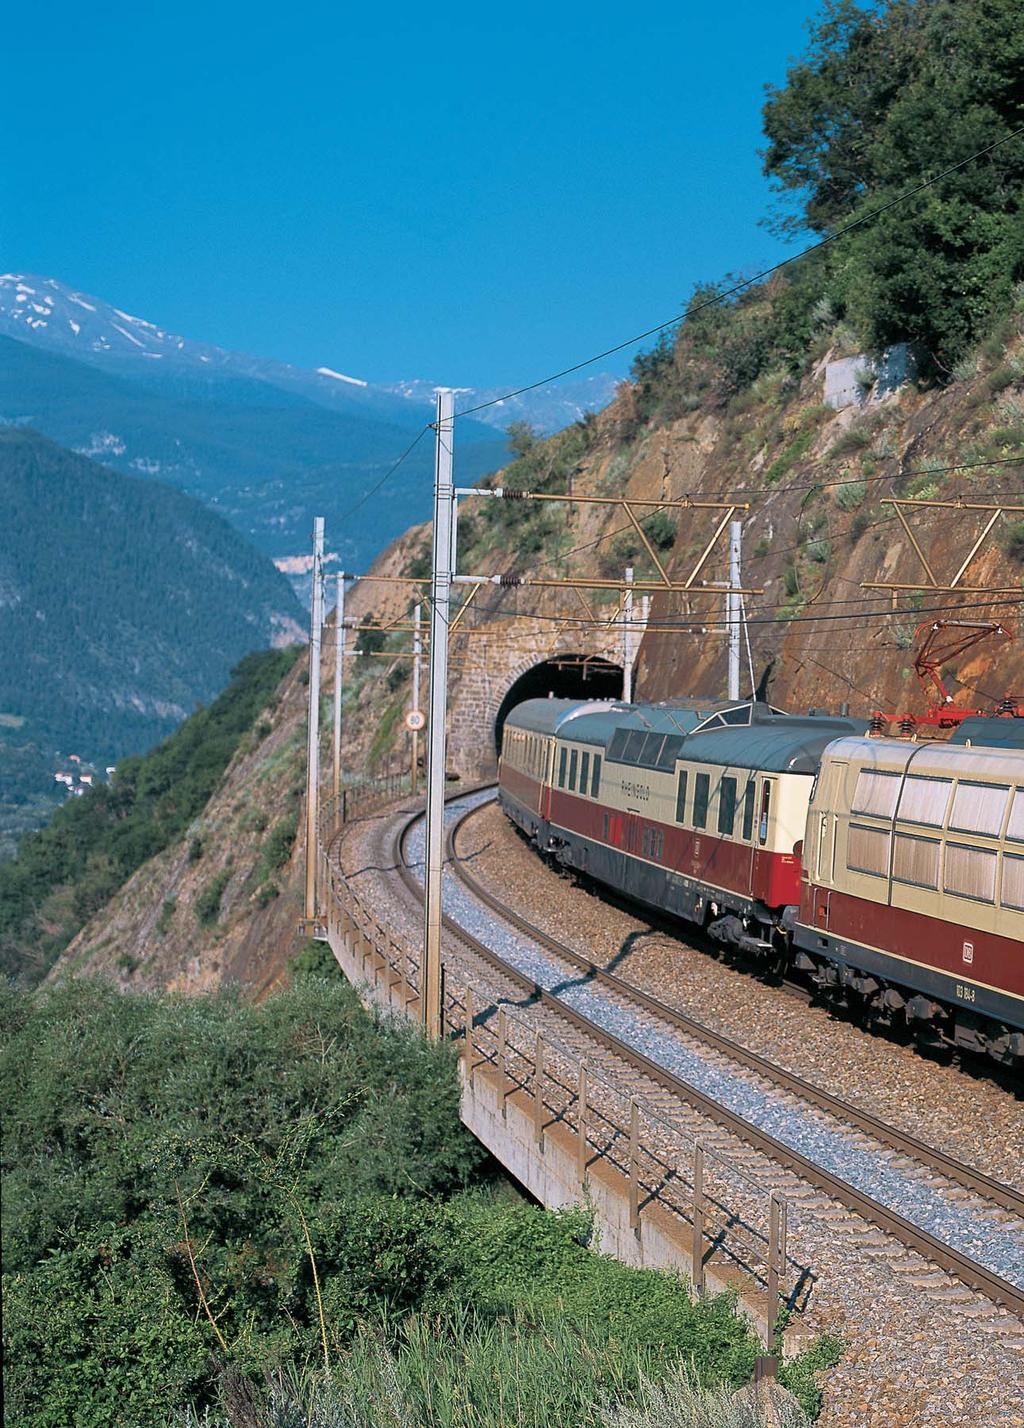 DB-Klassiker in der Schweiz Im April 2007 wurde vom Schweizerischen Bundesamt für Verkehr der DB-Baureihe 103 eine Betriebsbewilligung für Sonderfahrten in der Schweiz erteilt.